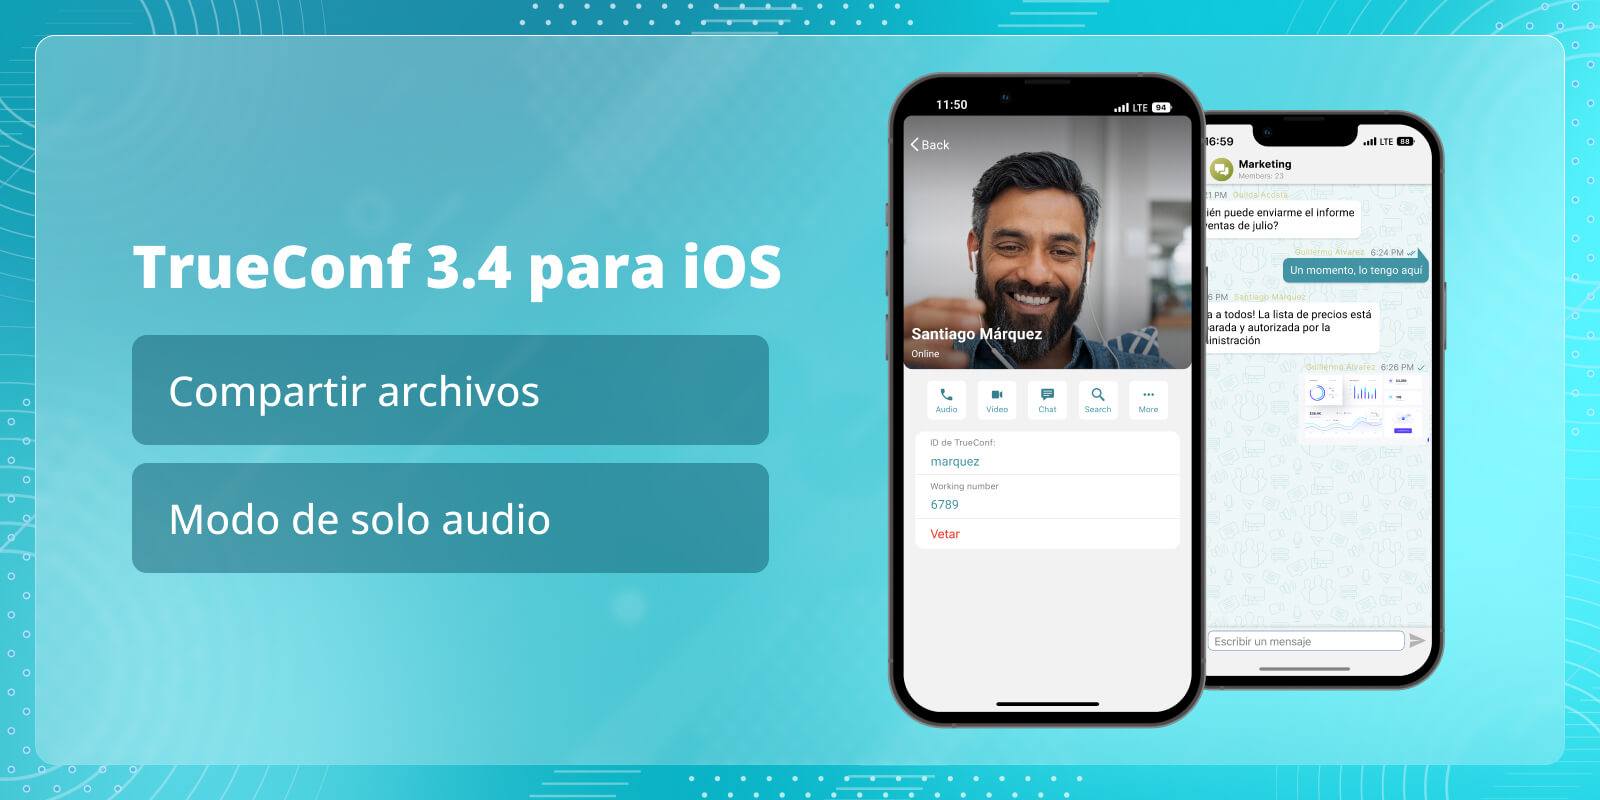 TrueConf 3.4 para iOS: Compartir archivos y modo de solo audio 4